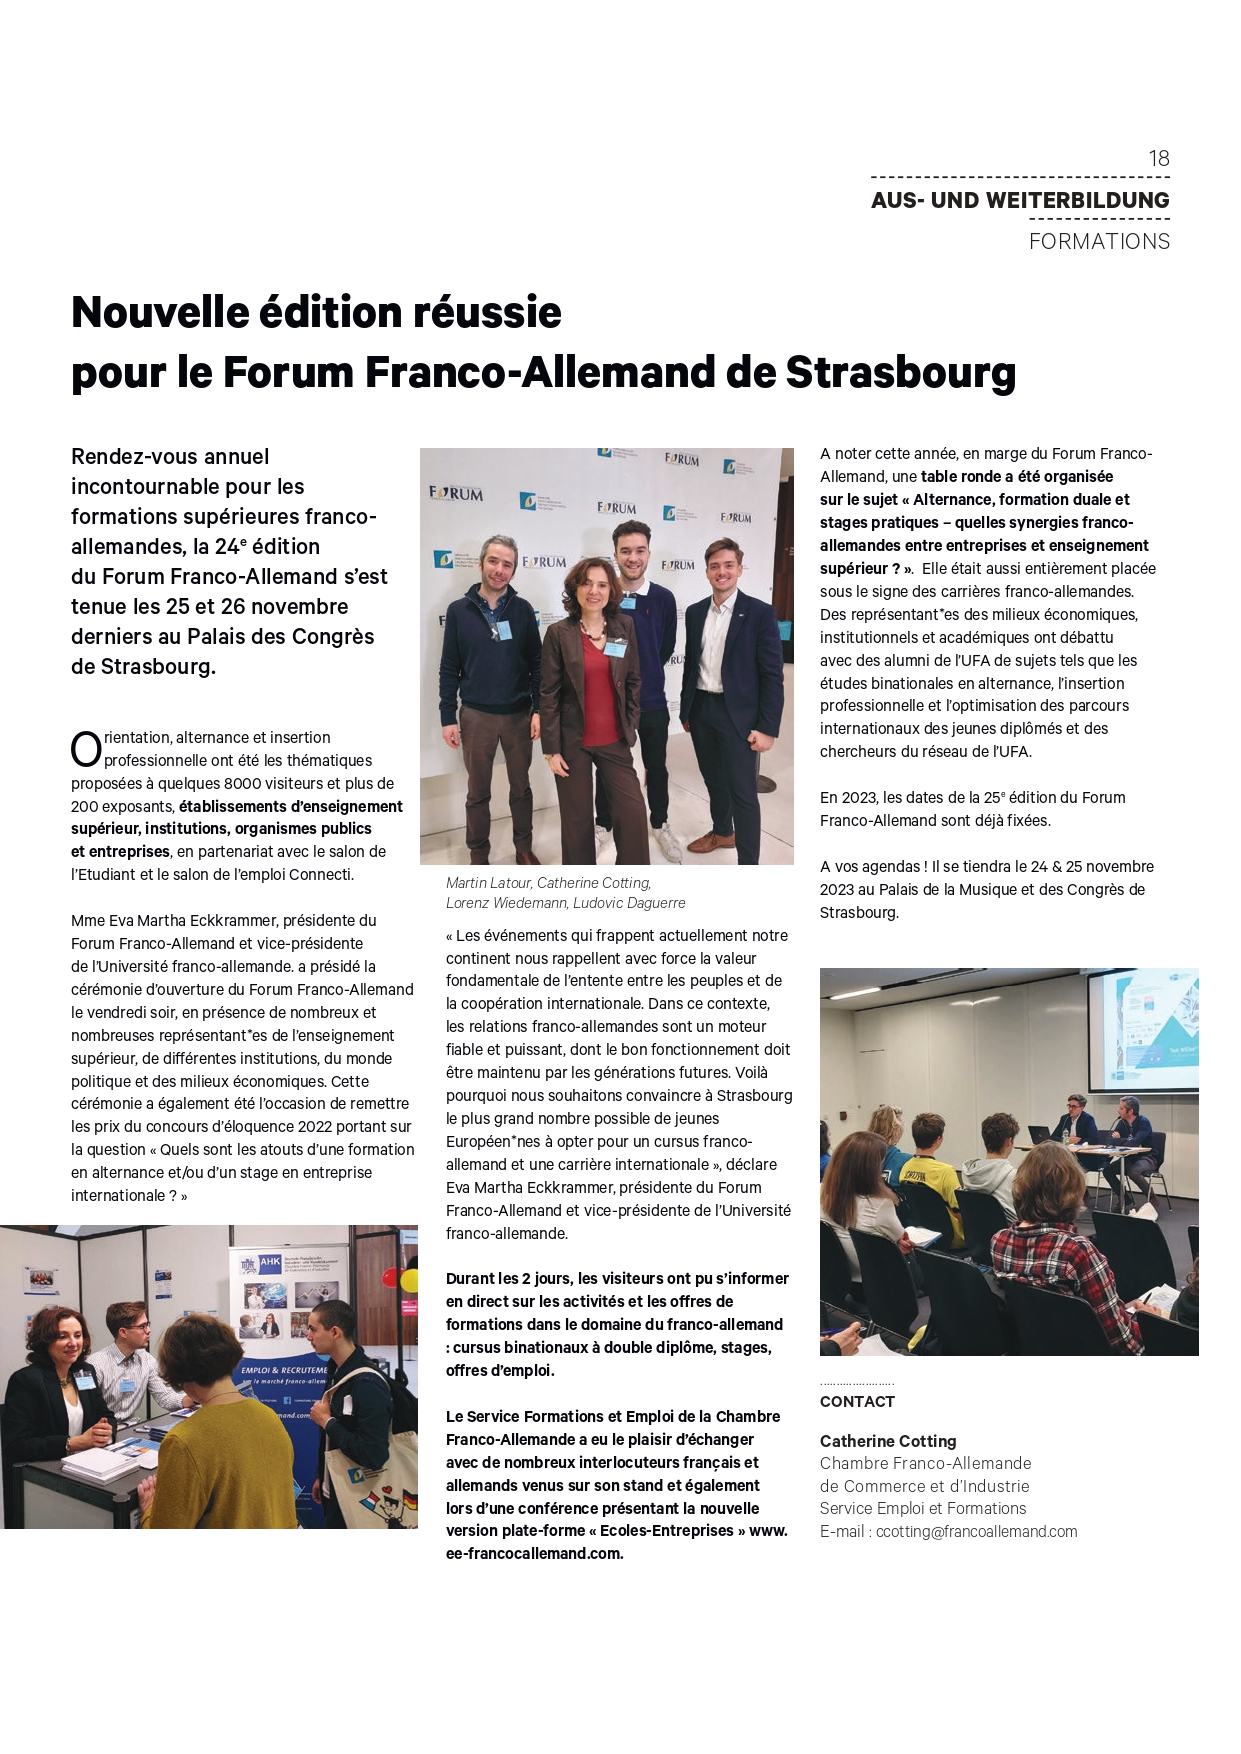 Article dans le magazine Contact de l'AHK Frankreich suite au Forum Franco-Allemand de Strasbourg